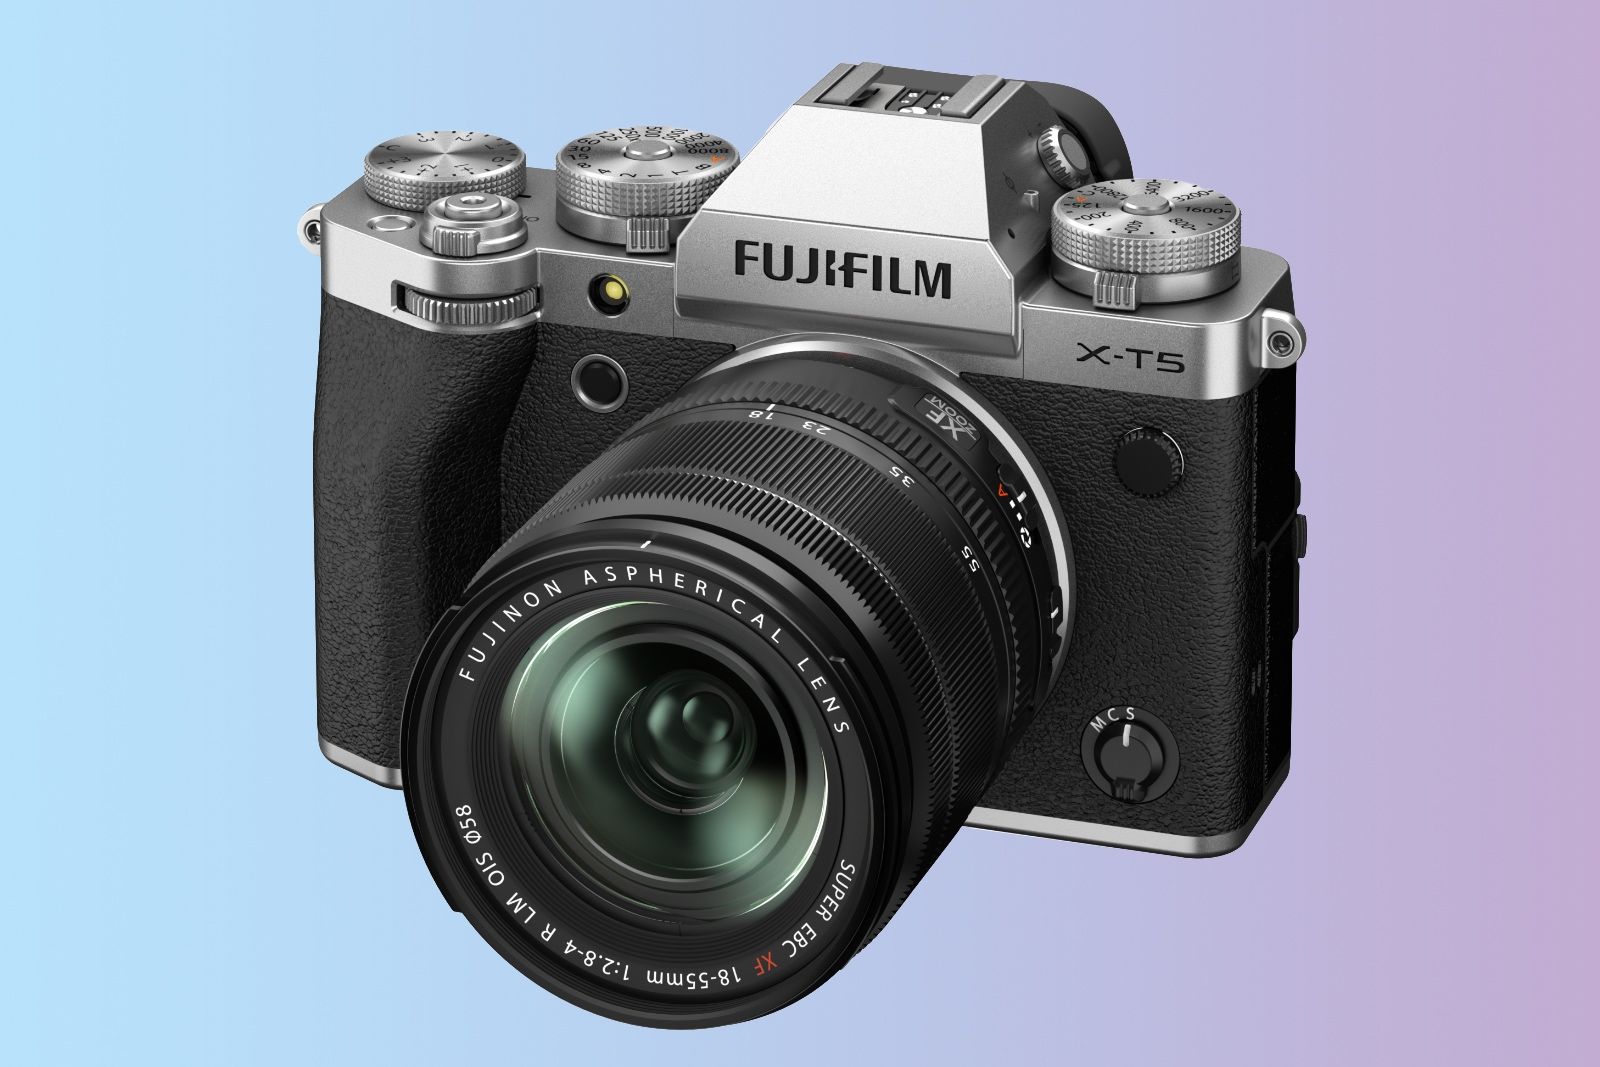 Fujifilm X-T5 vs Fujifilm X-H2: Which is right for you?